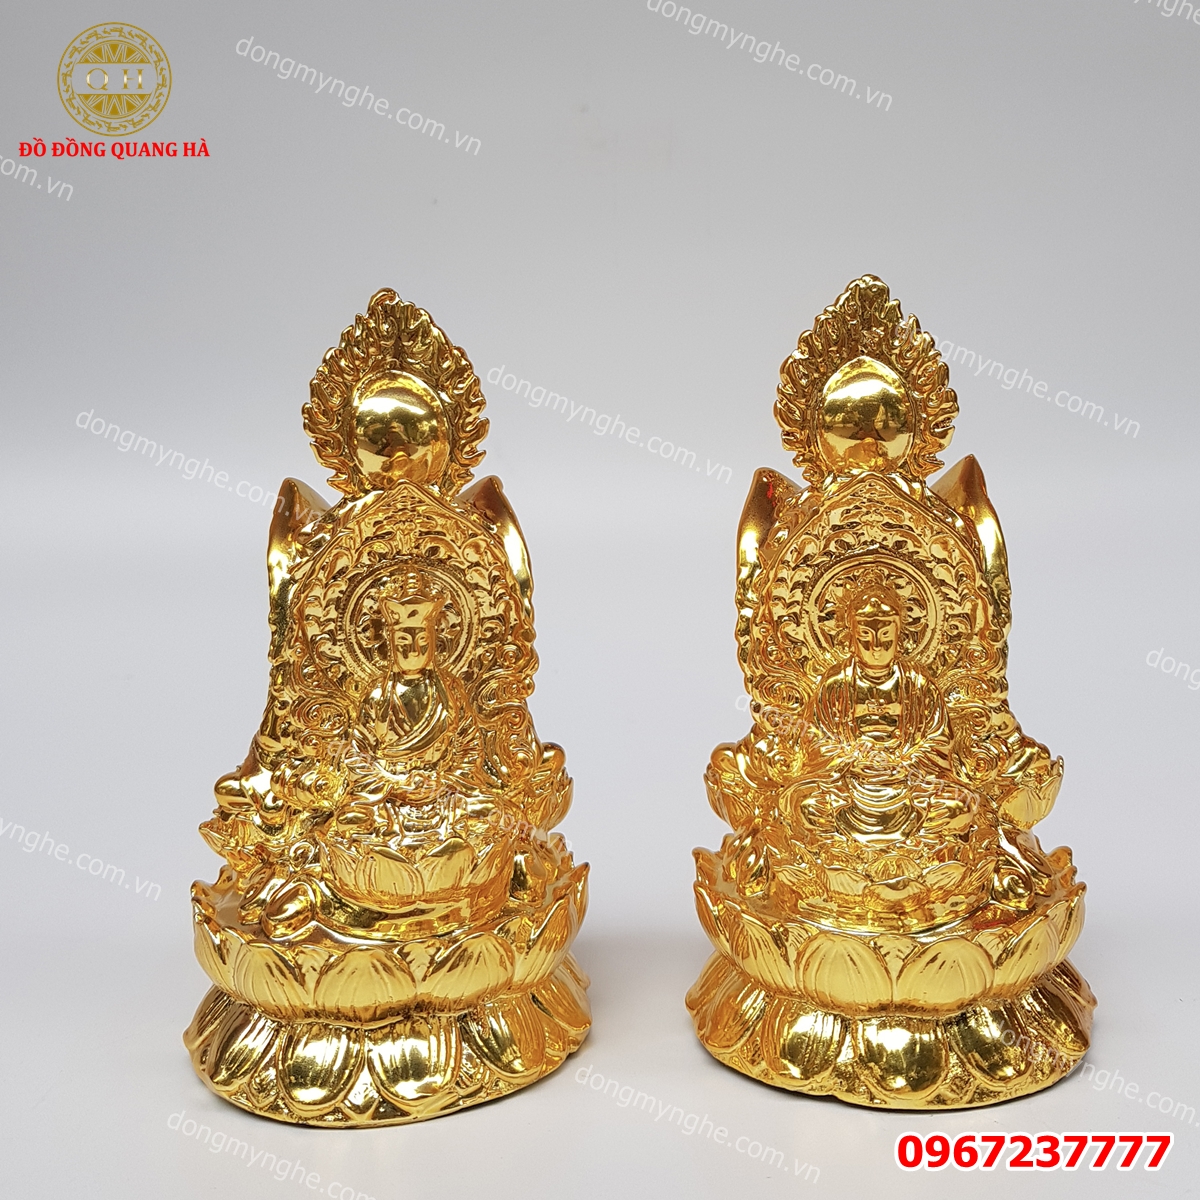 Tượng Phật 3 mặt mạ vàng sang trọng